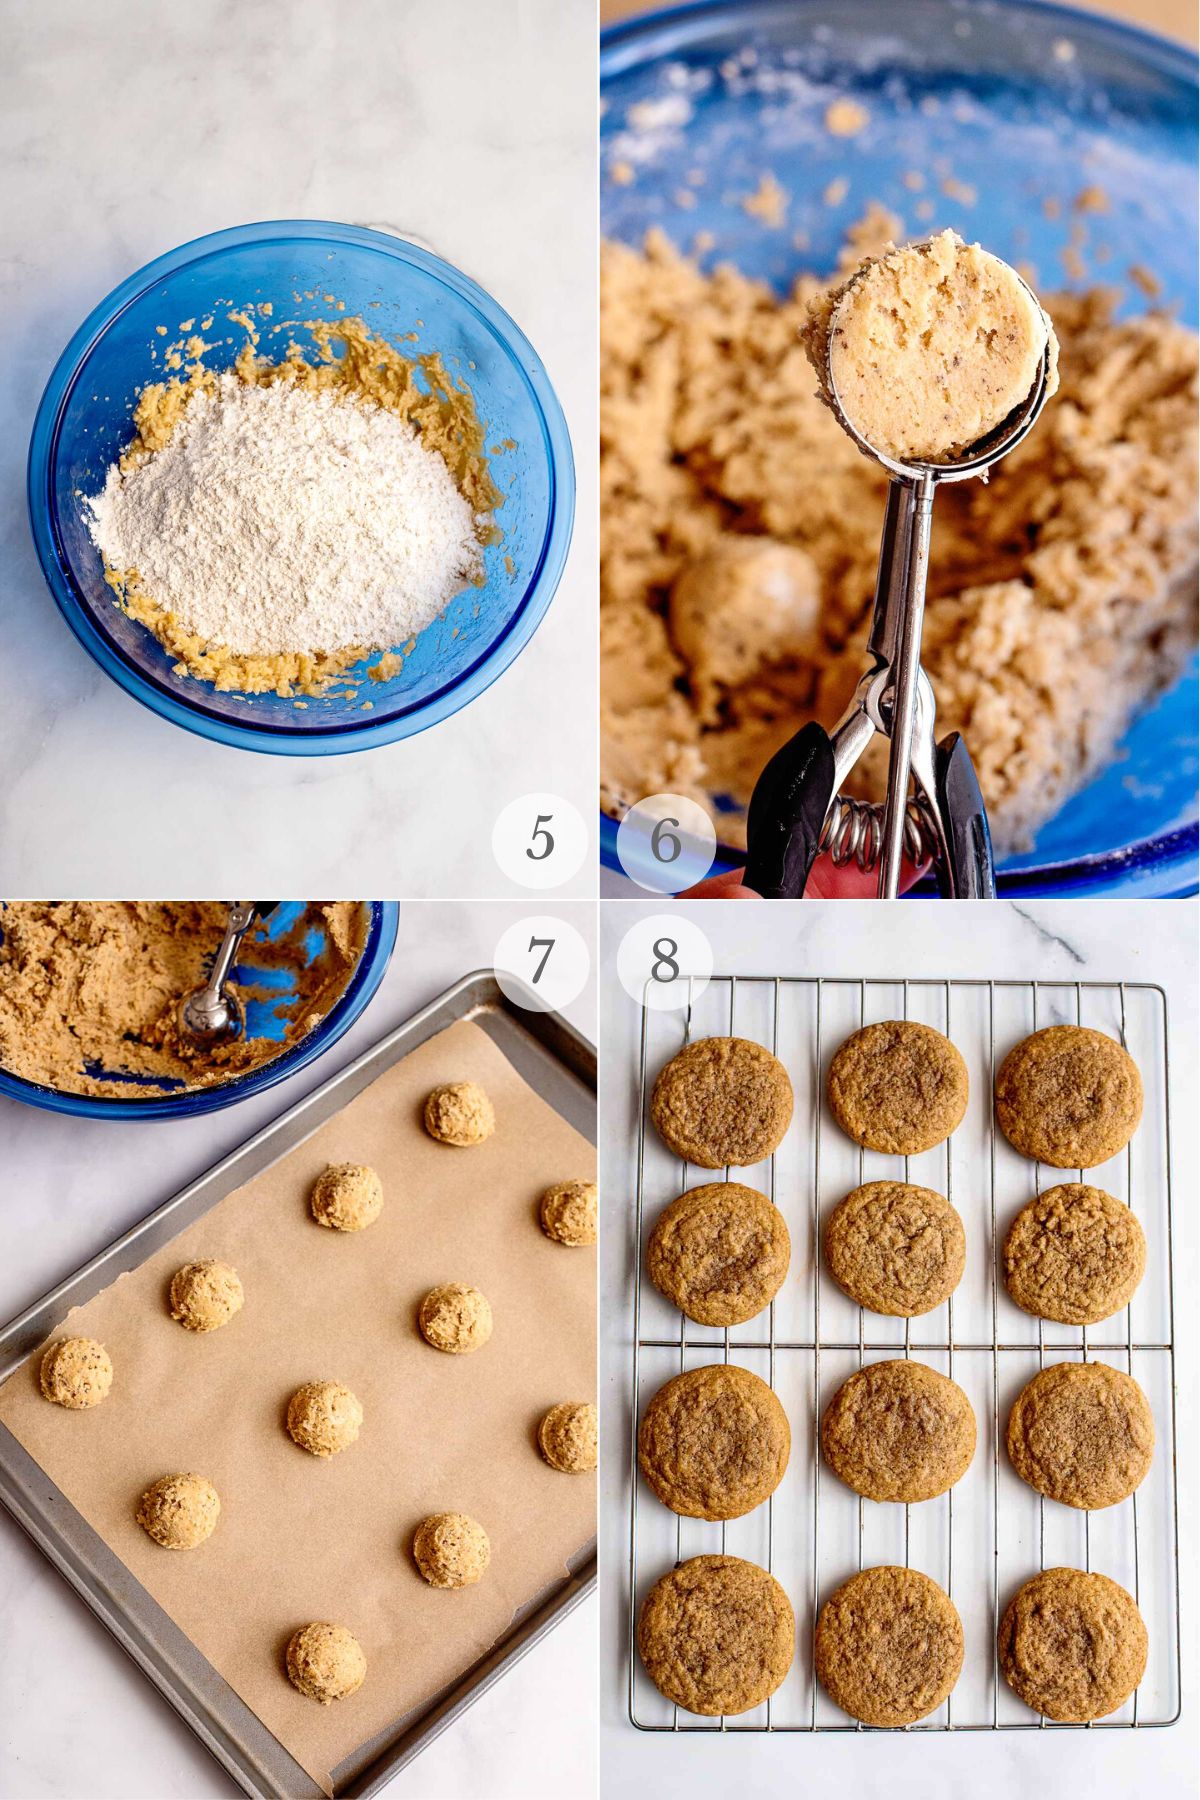 coffee cookies recipe steps 5-8.